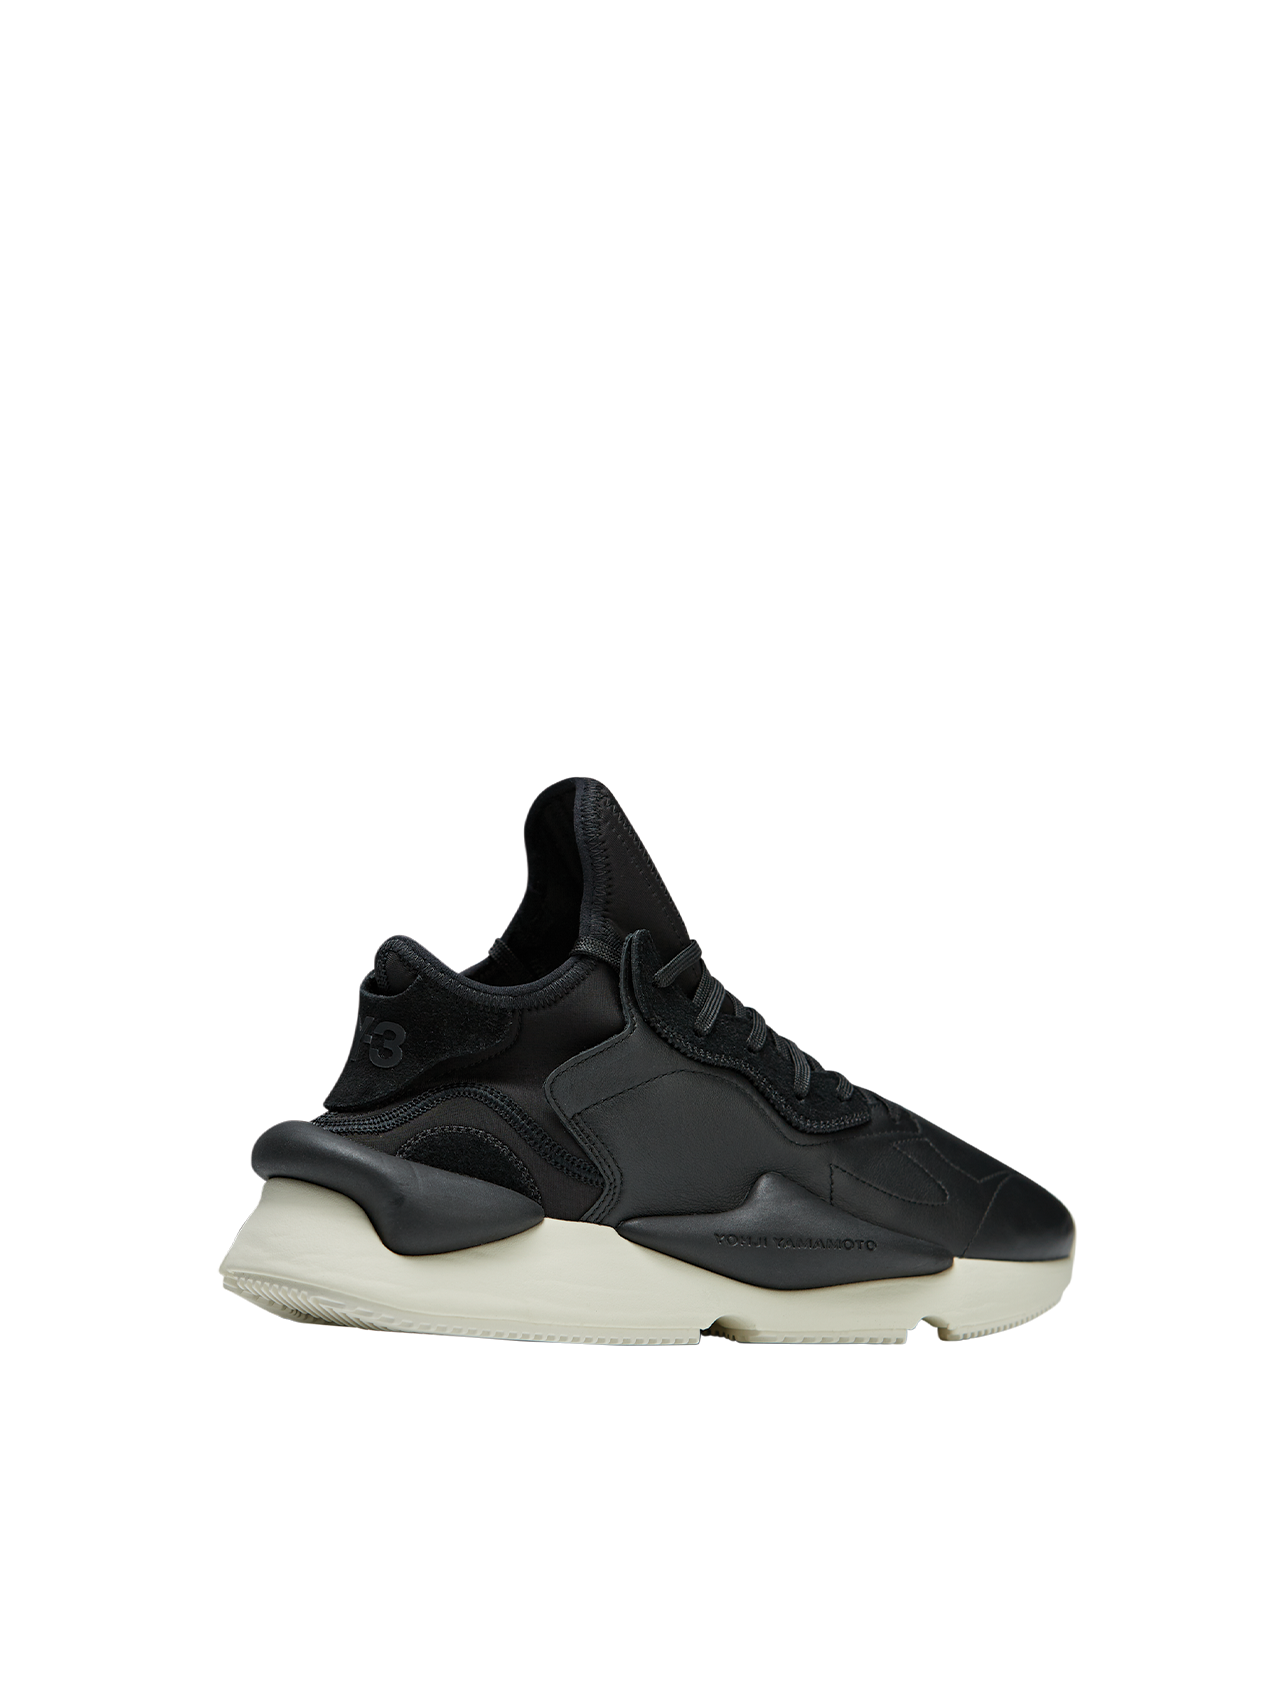 Y-3 Black/Off White Kaiwa Sneakers